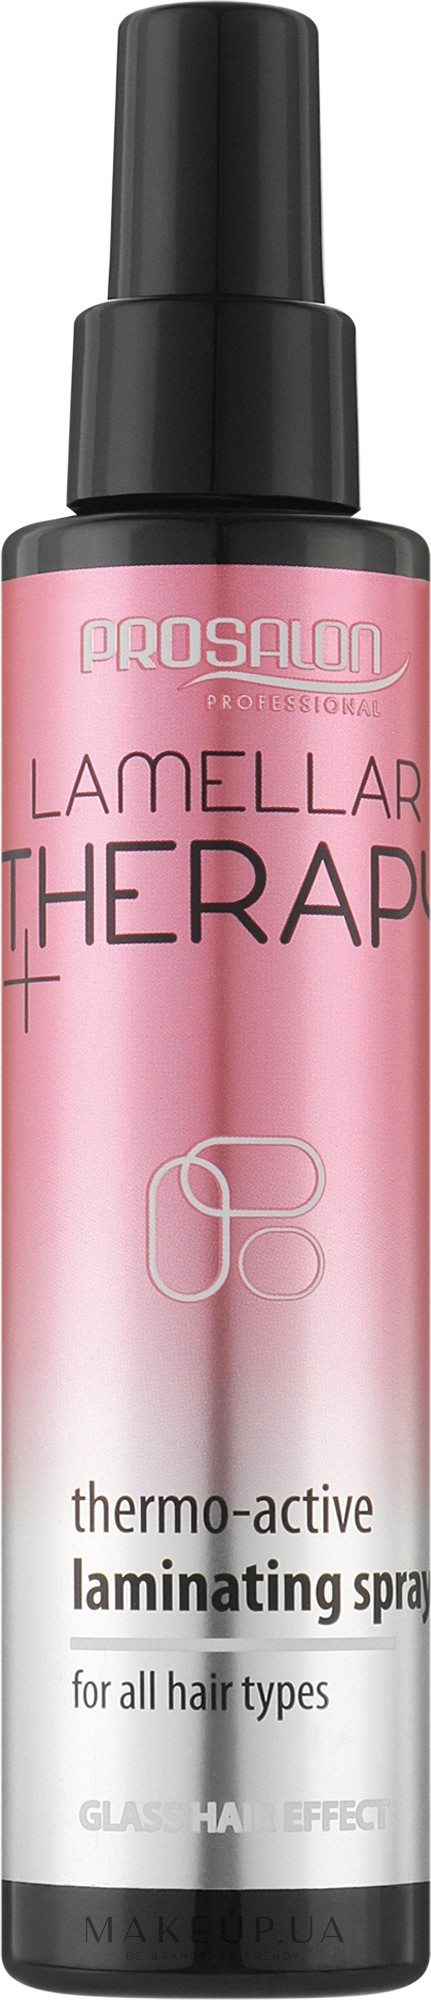 Термоактивный ламинирующий спрей для волос - Prosalon Lamellar Therapy+ Thermo-Active Laminating Spray — фото 150ml